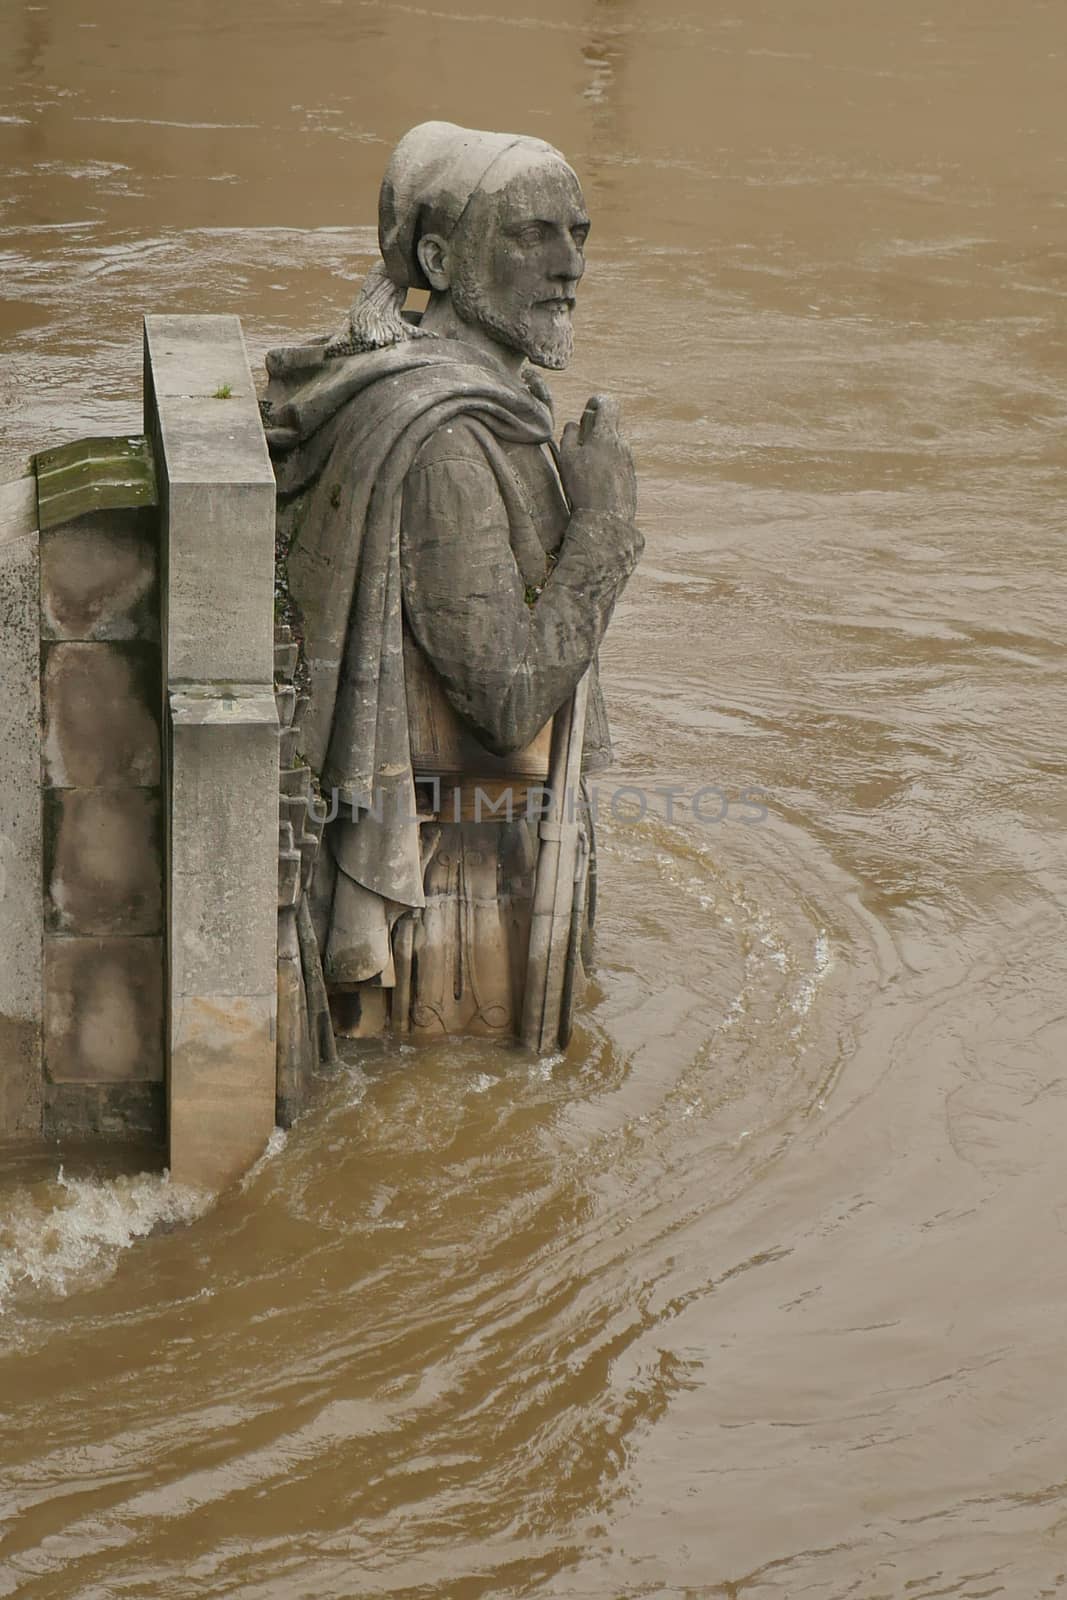 Zouave statue is most famous feature of Pont de Alma, Zouave statue shows how high Seine has risen.